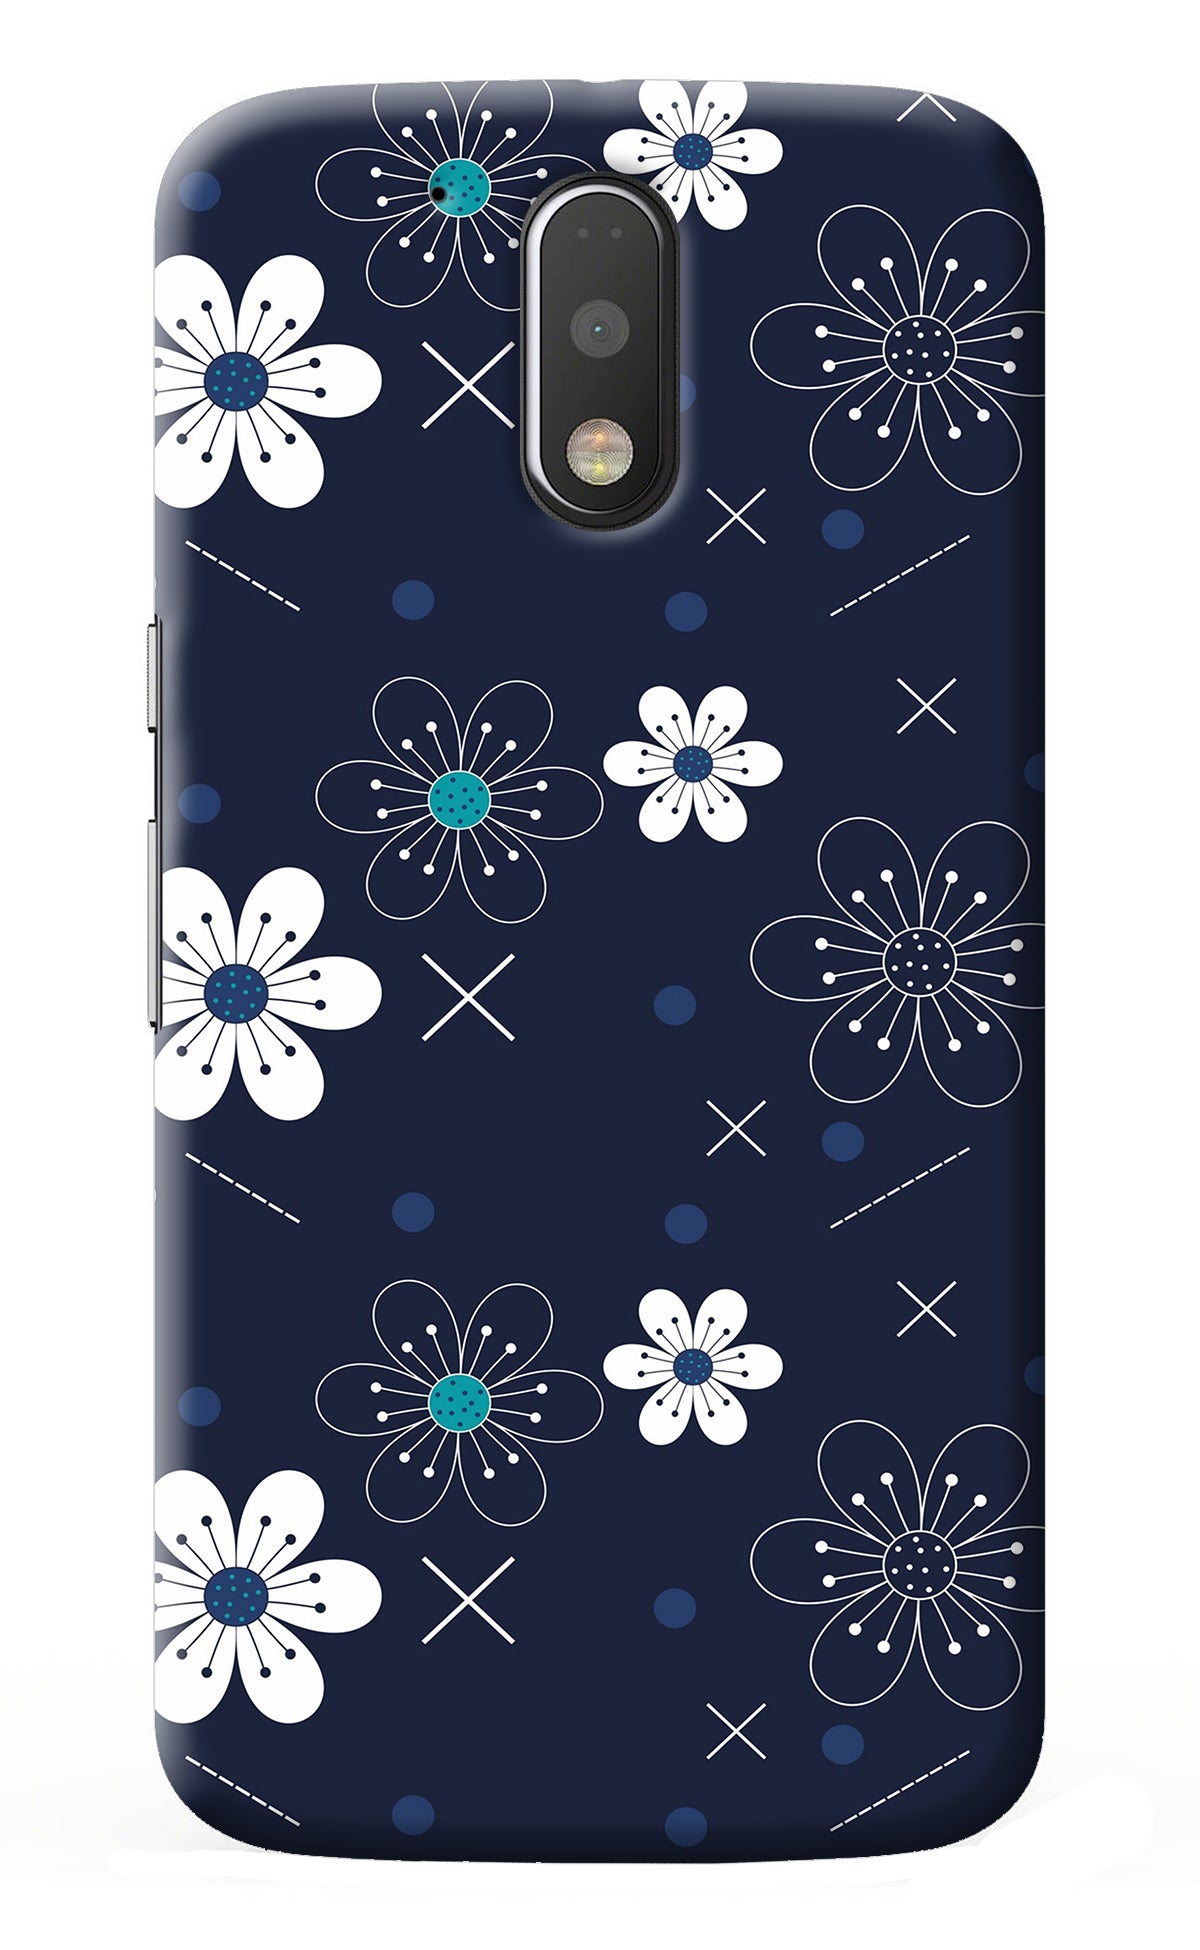 Flowers Moto G4/G4 plus Back Cover